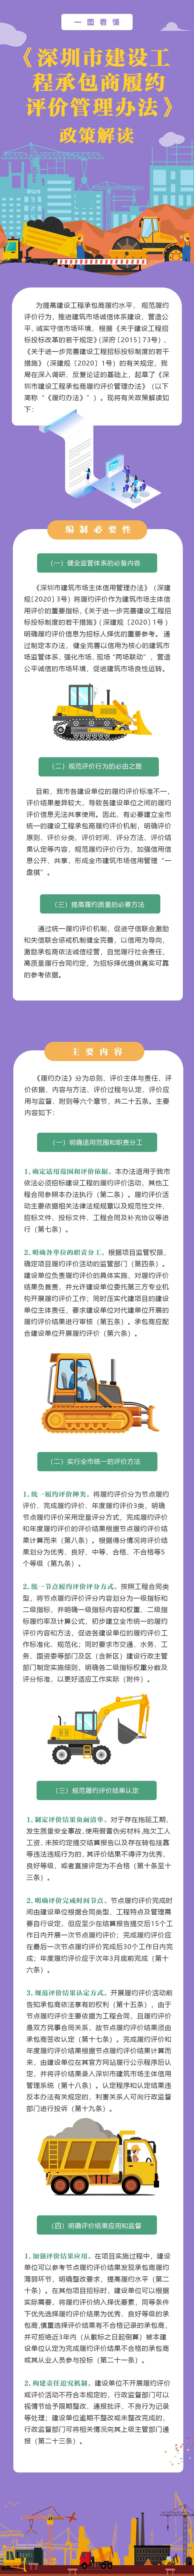 深圳市建设工程承包商履约评价管理办法政策解读.jpg